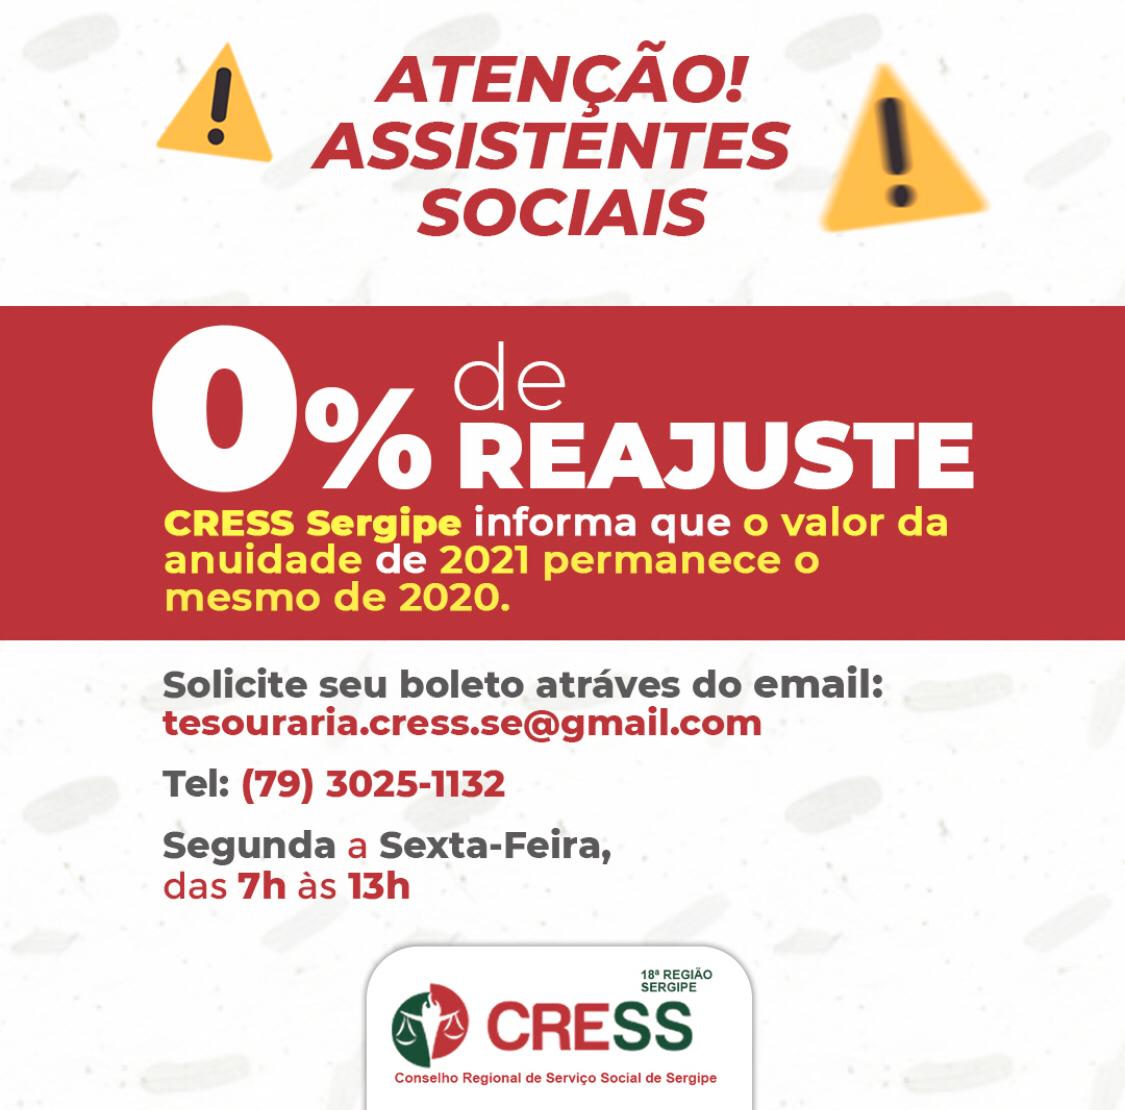 CRESS Sergipe mantém anuidade de 2021 sem reajuste